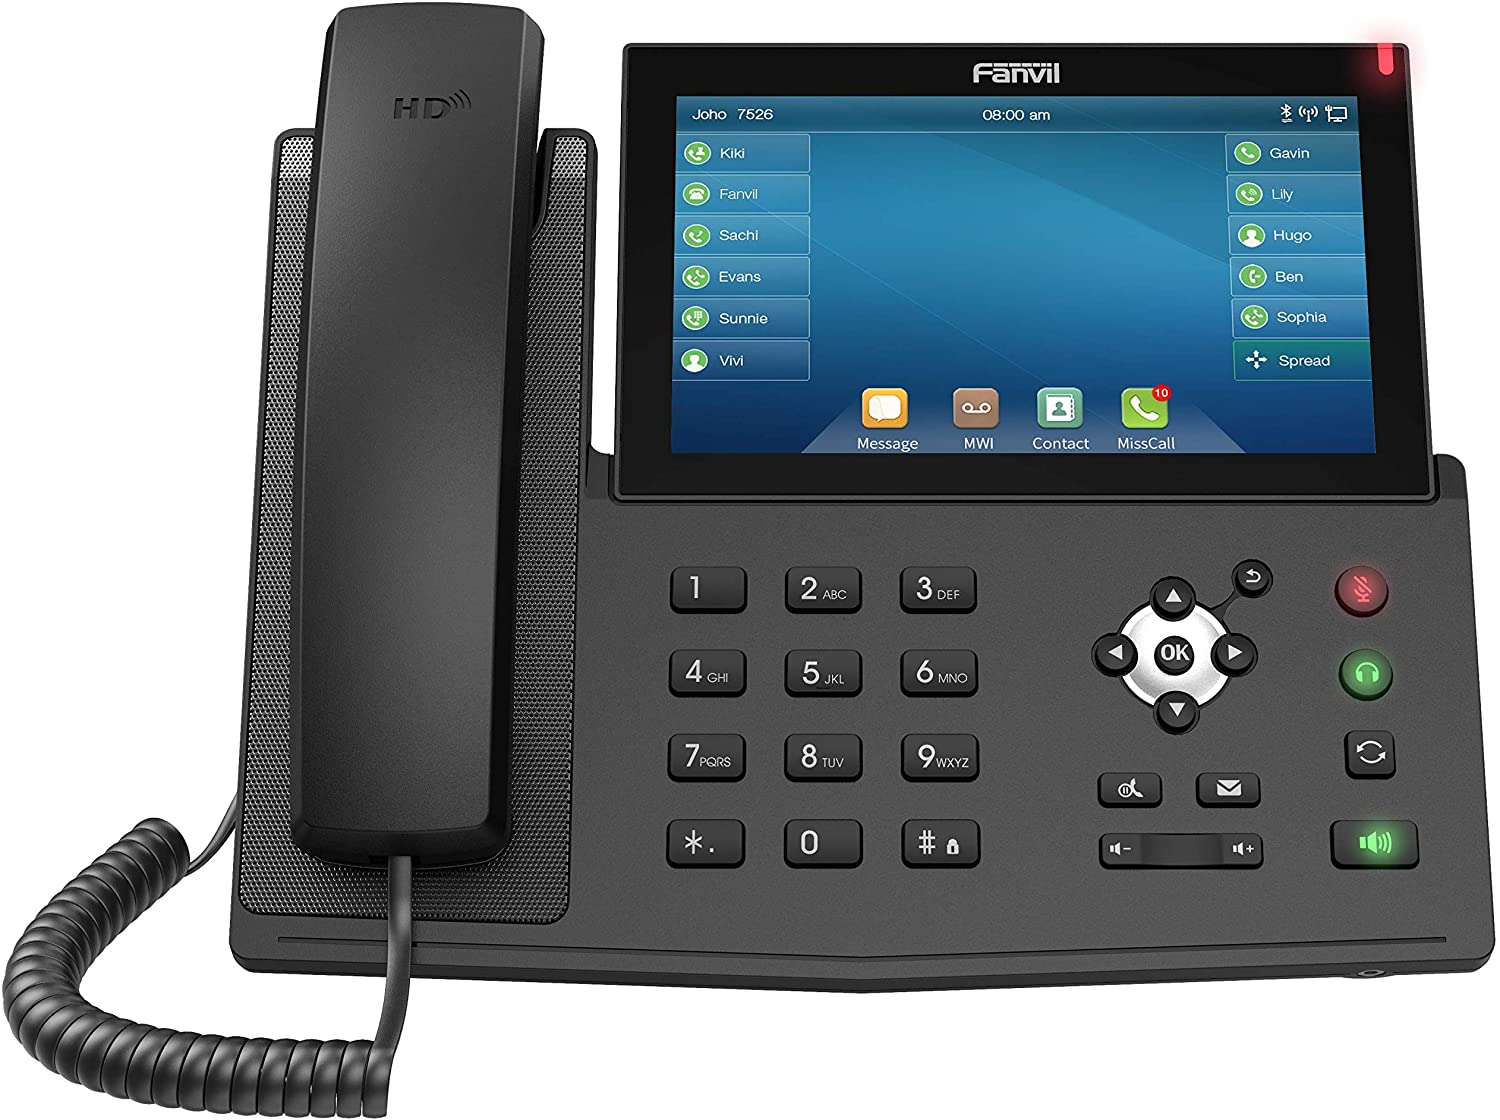 هاتف فانفيل Fanvil X7 IP مع 20 خطوط SIP ومفتاح وخط عرض ملون 7 بوصة مع مدخل USB